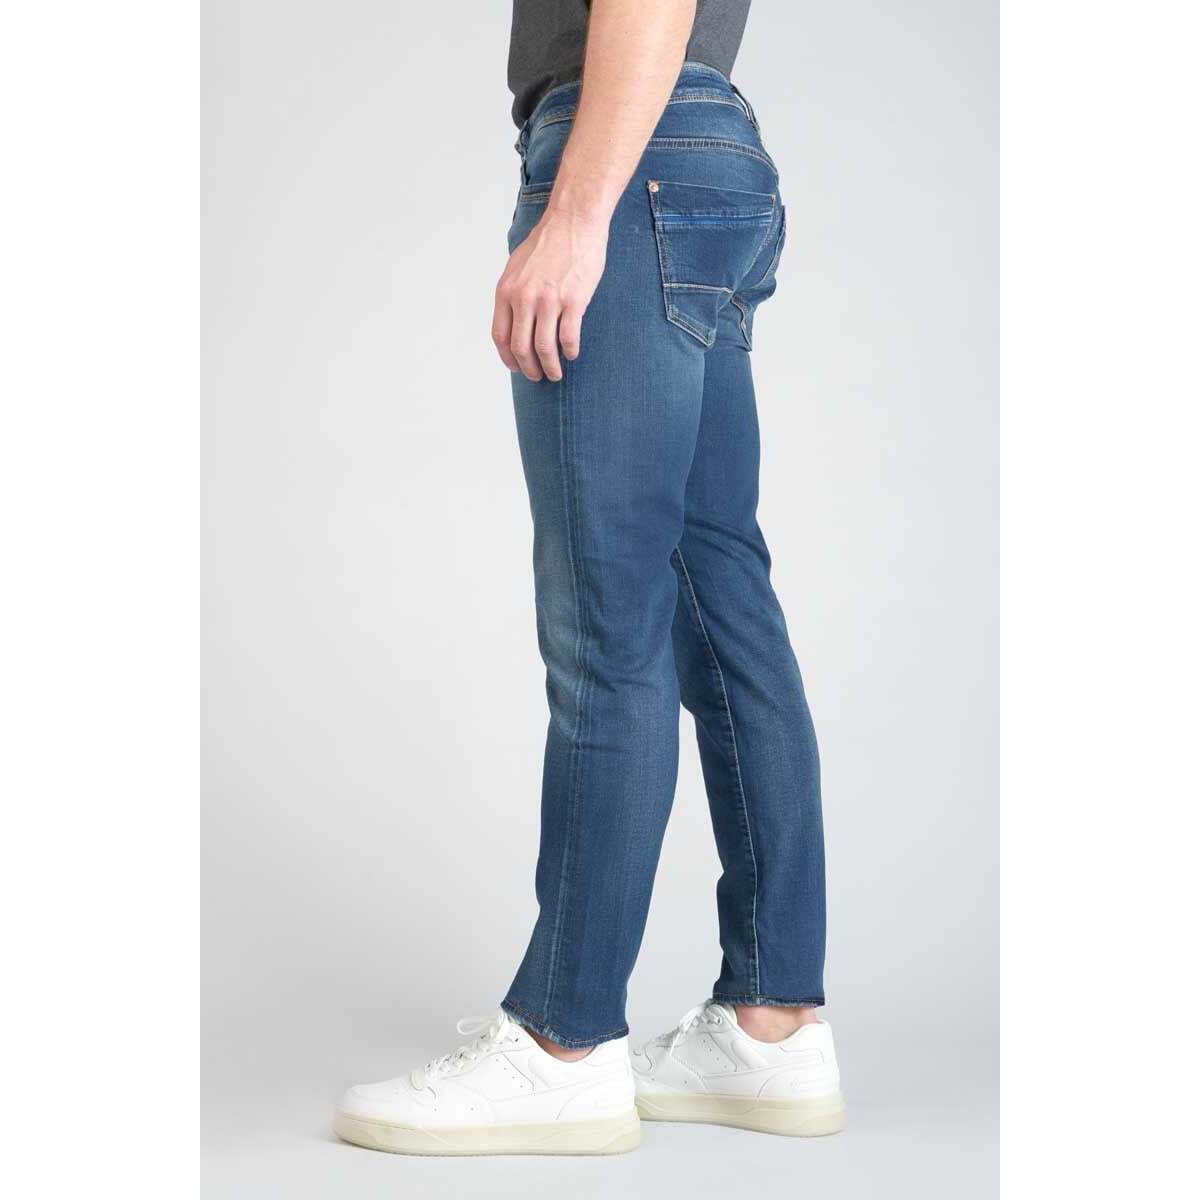 Le Temps des Cerises Bleu Lazare 700/11 adjusted jeans bleu KH9pNgLy